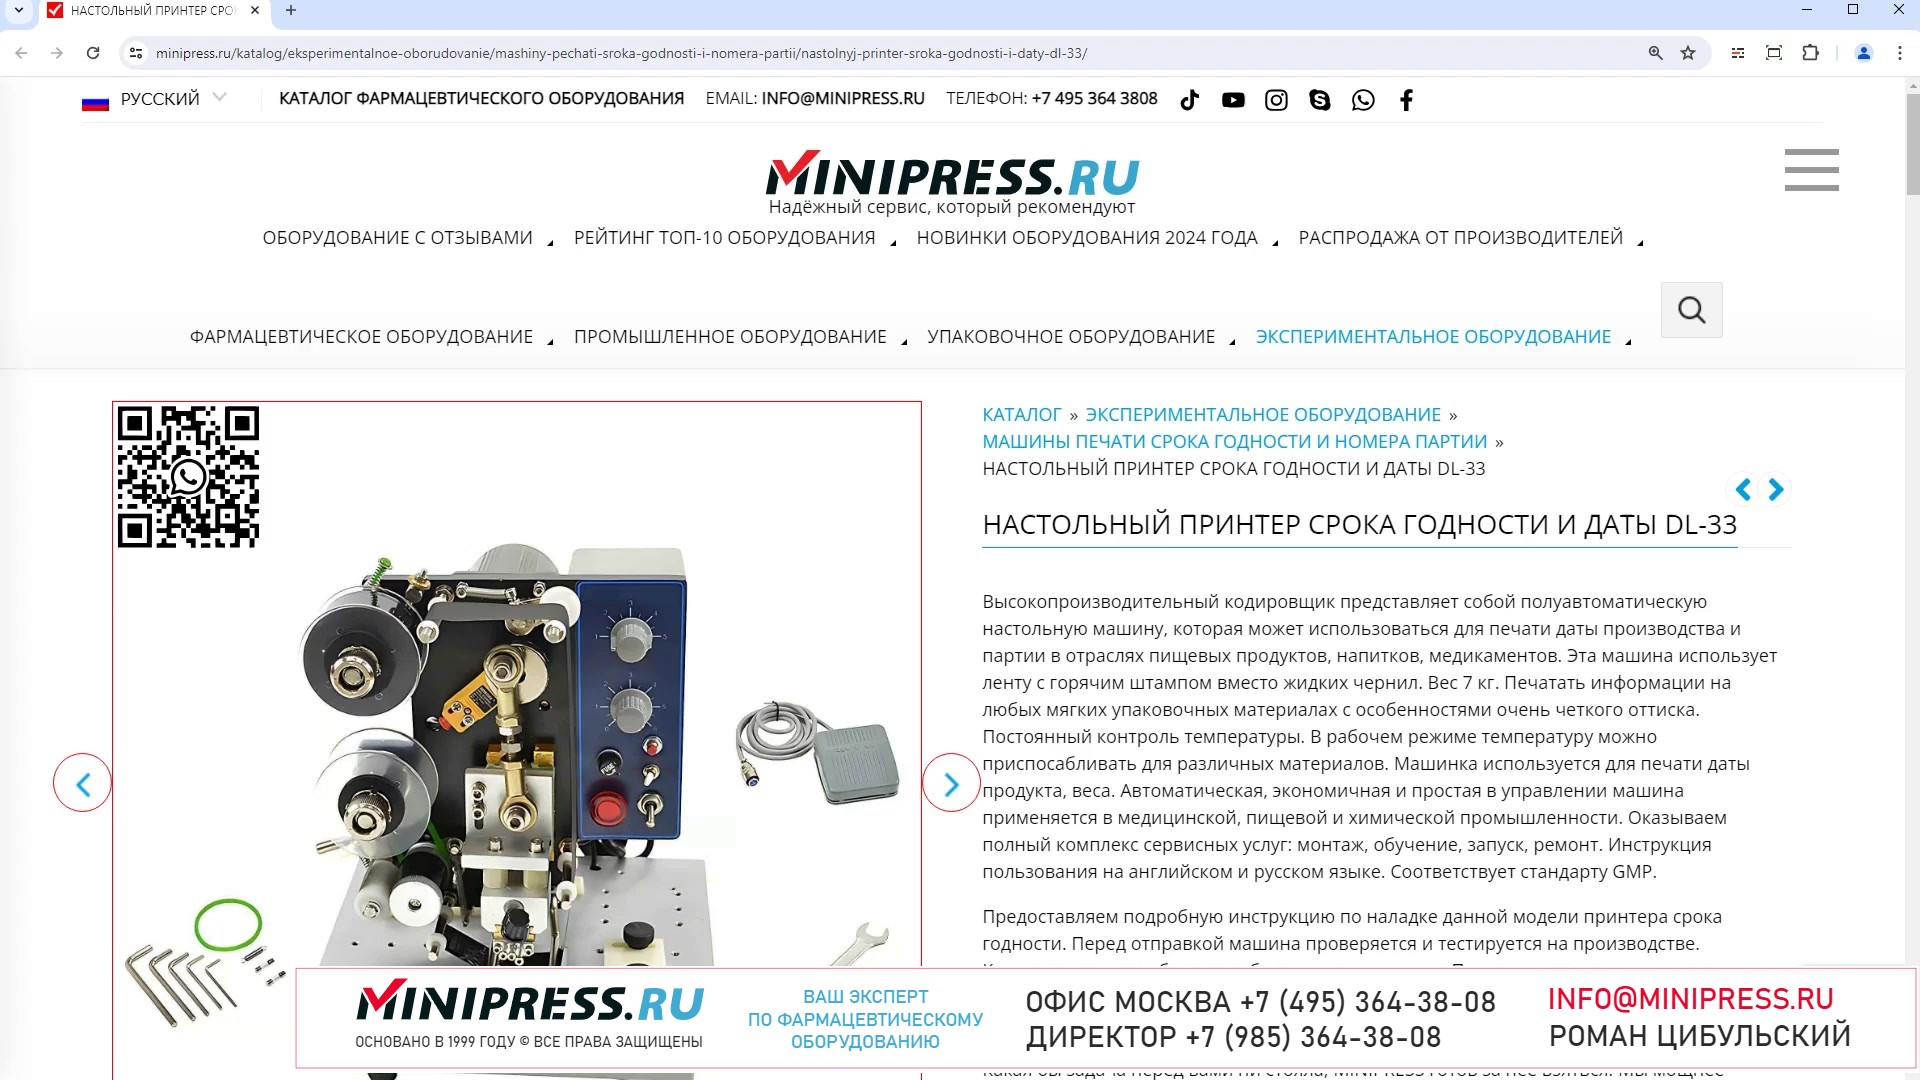 Minipress.ru Настольный принтер срока годности и даты DL-33